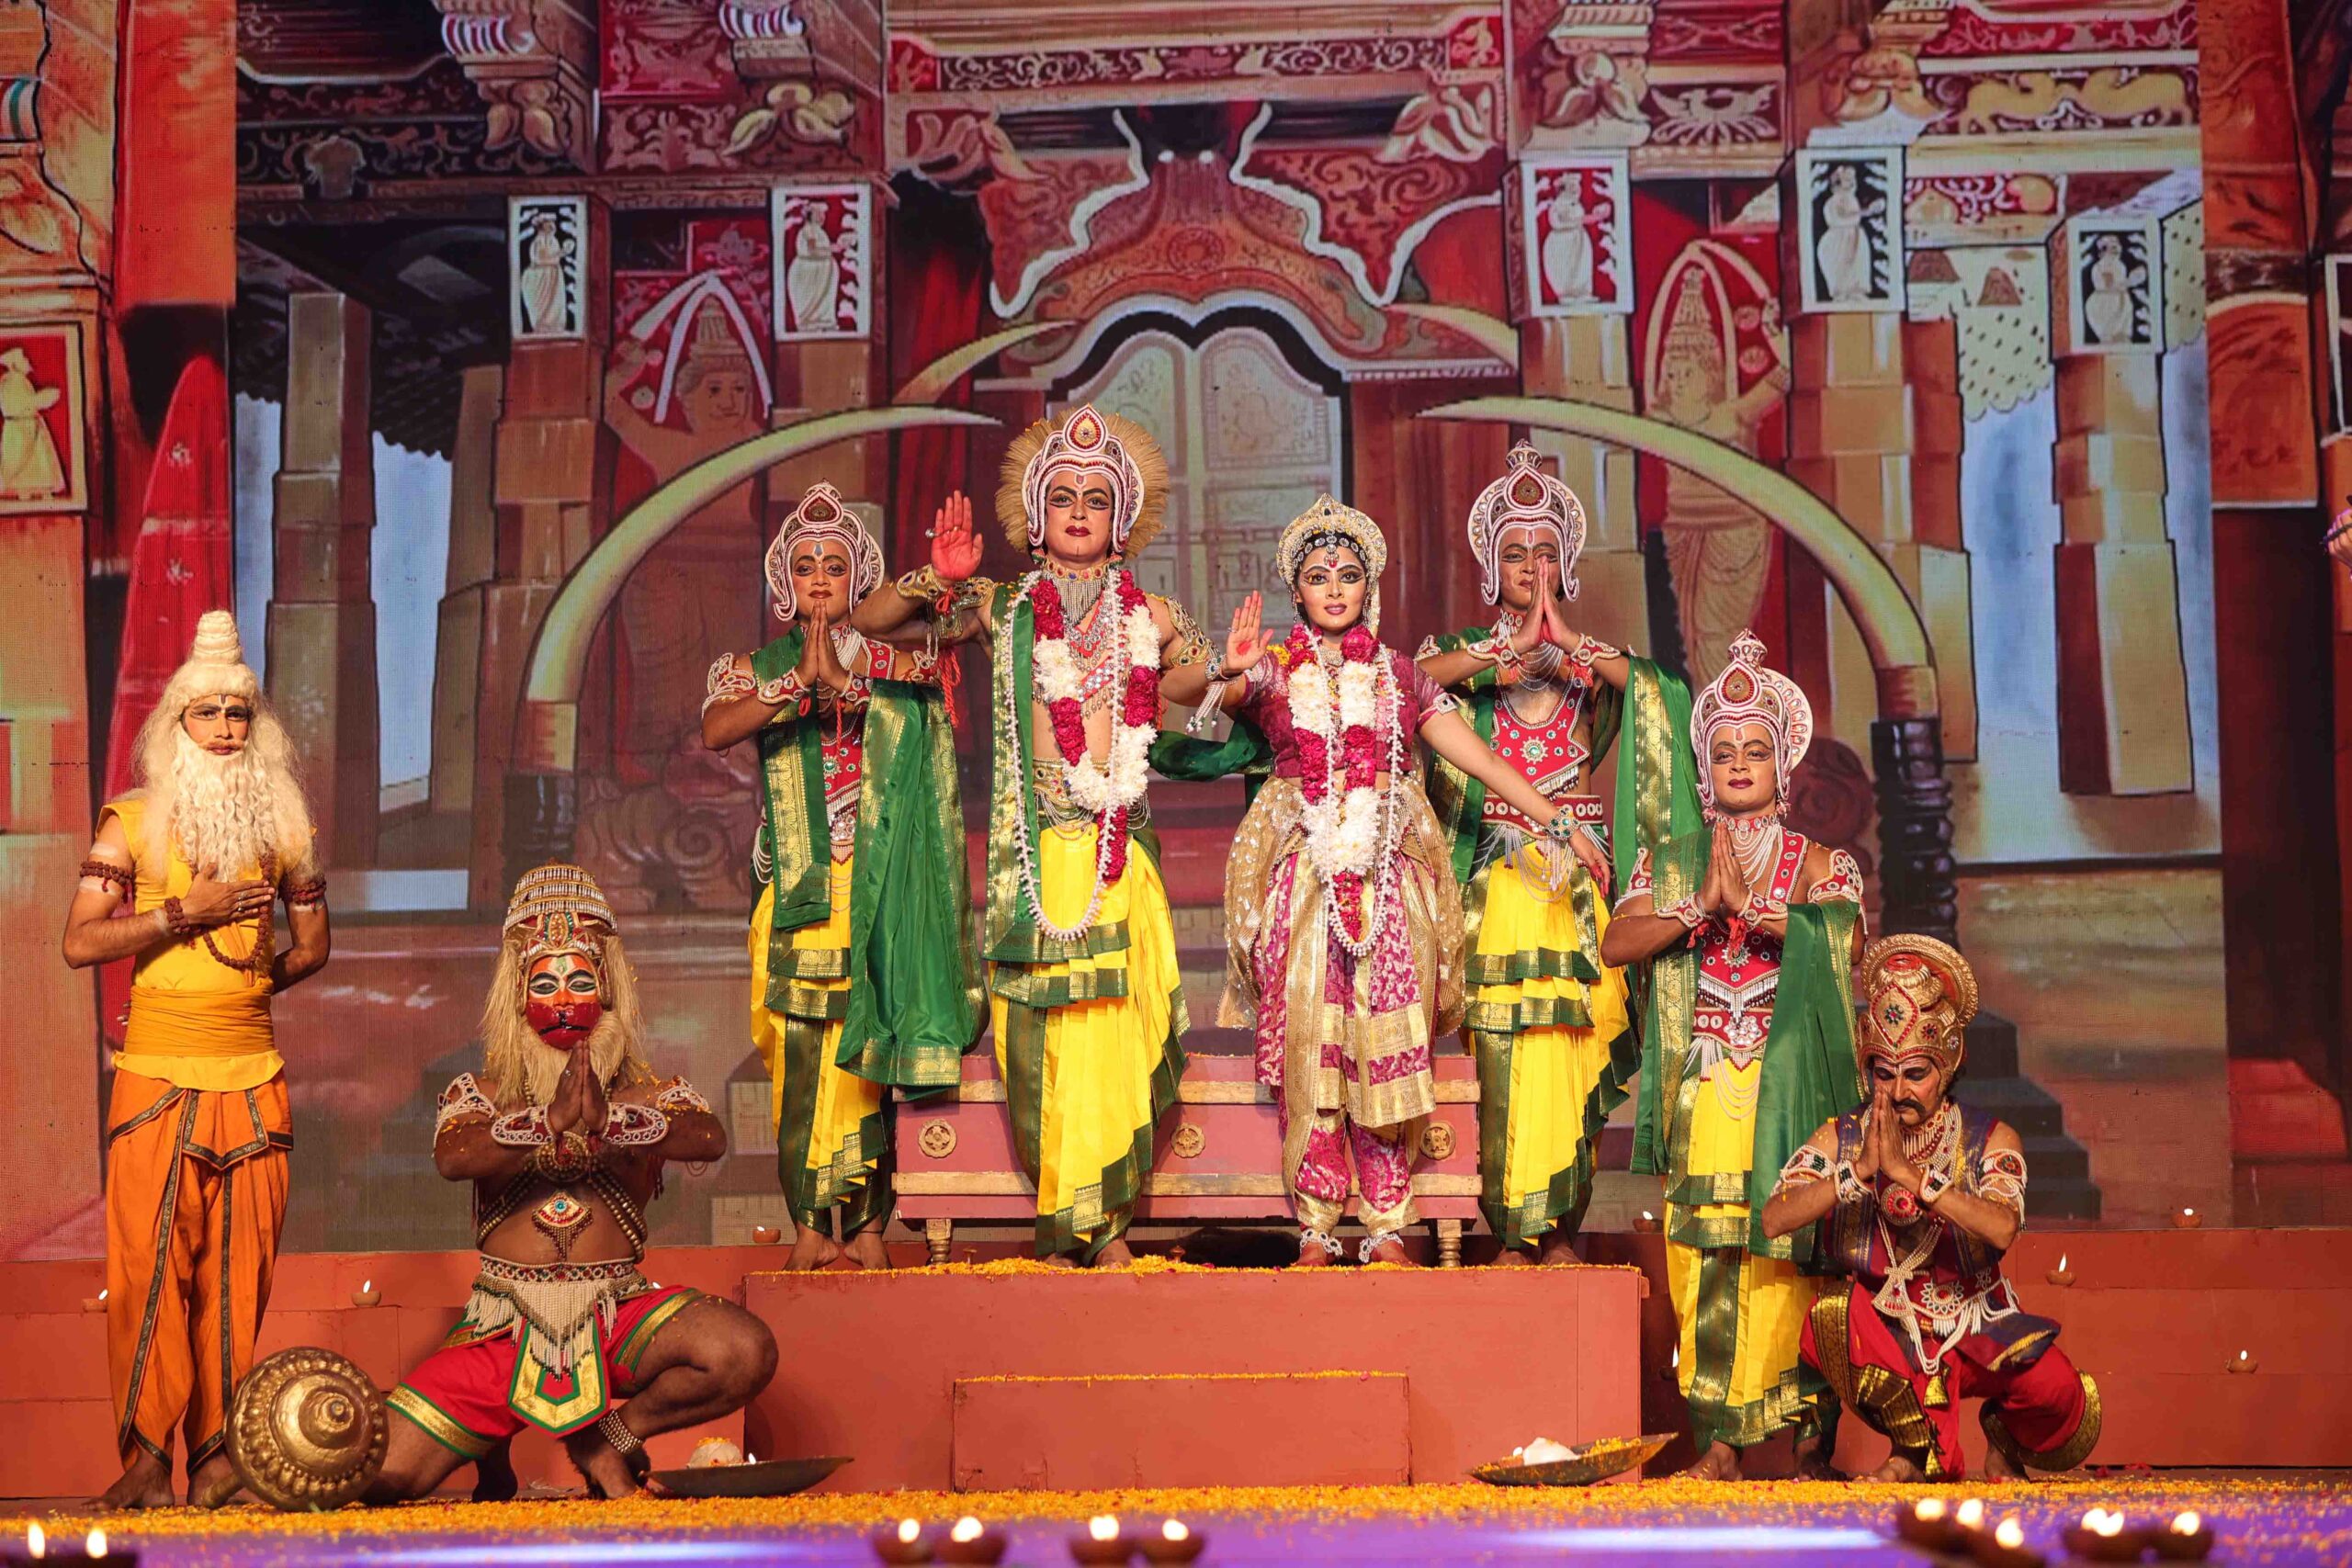 67वीं श्री राम नृत्यनाटिका का आयोजन 15 अक्टूबर से होगा